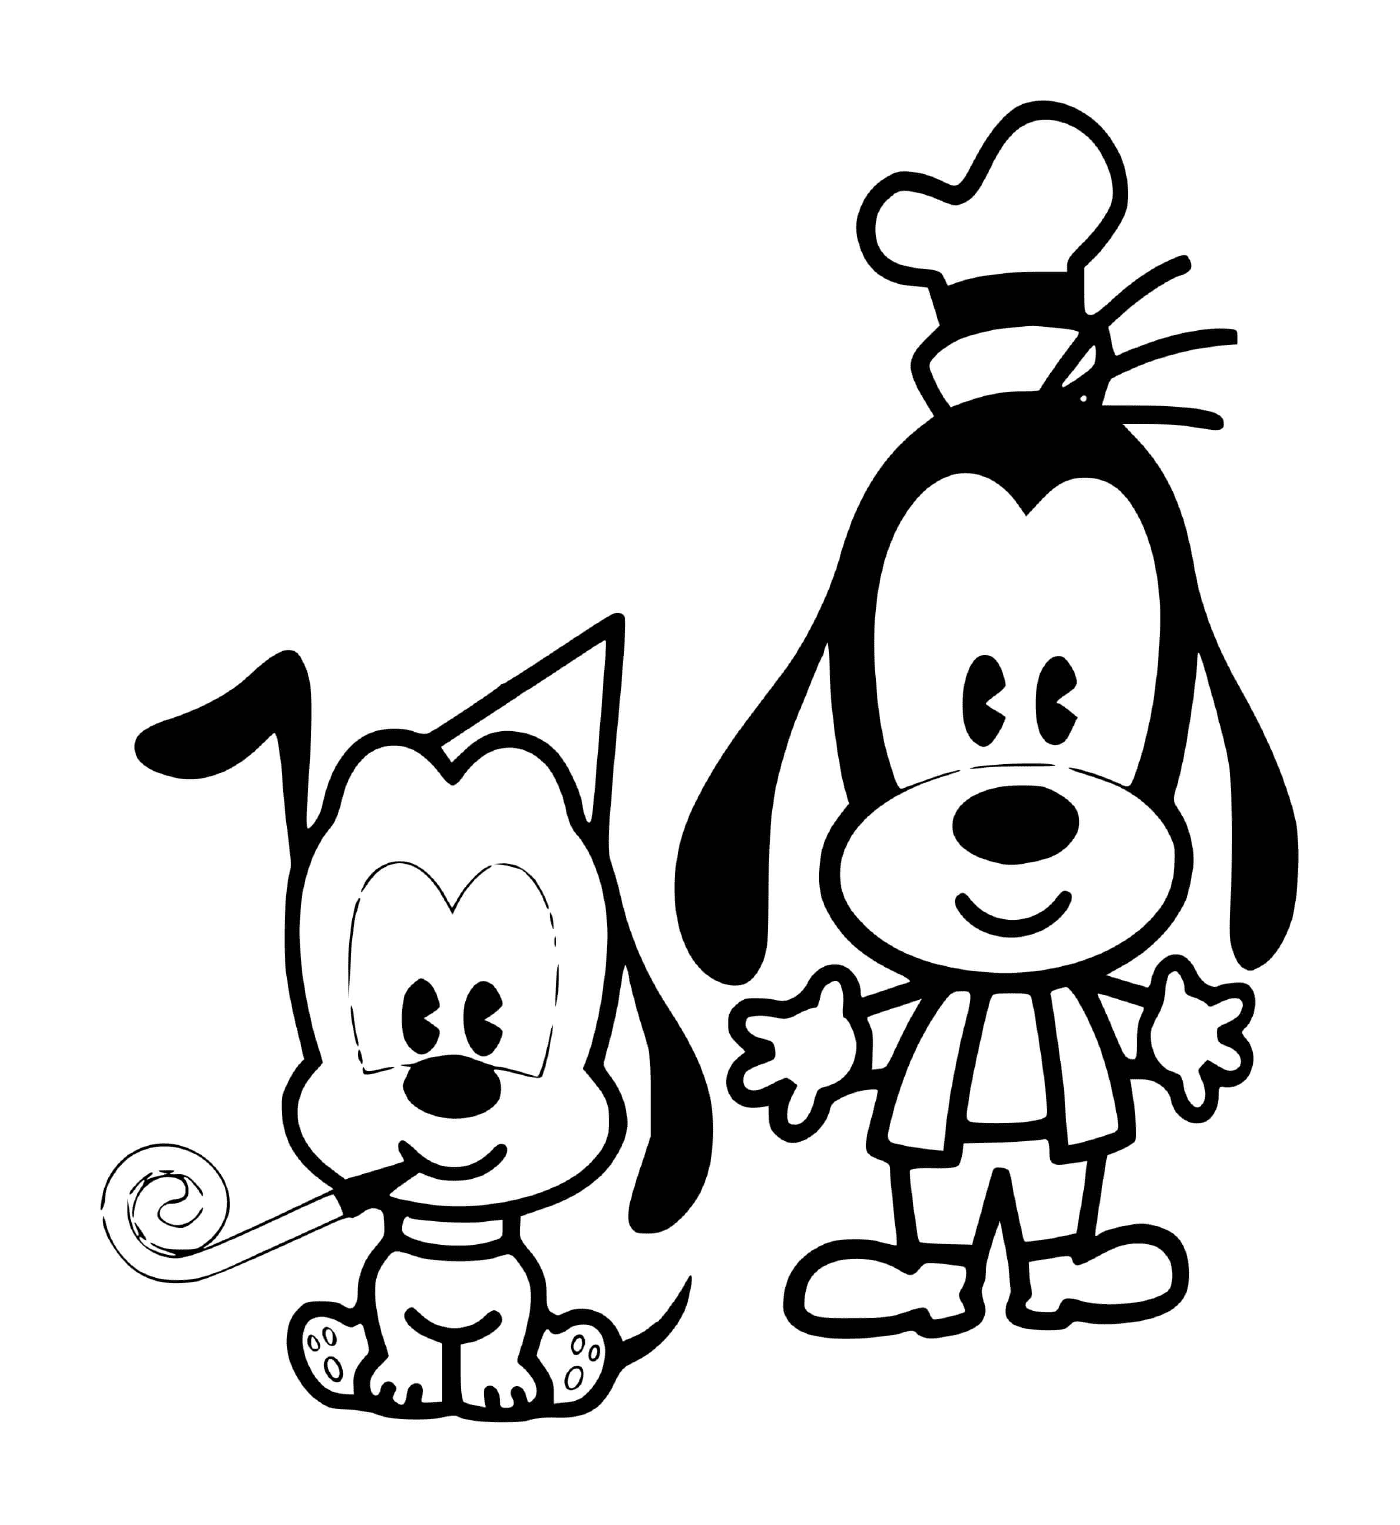  Dingo e Plutone bambino per un compleanno 